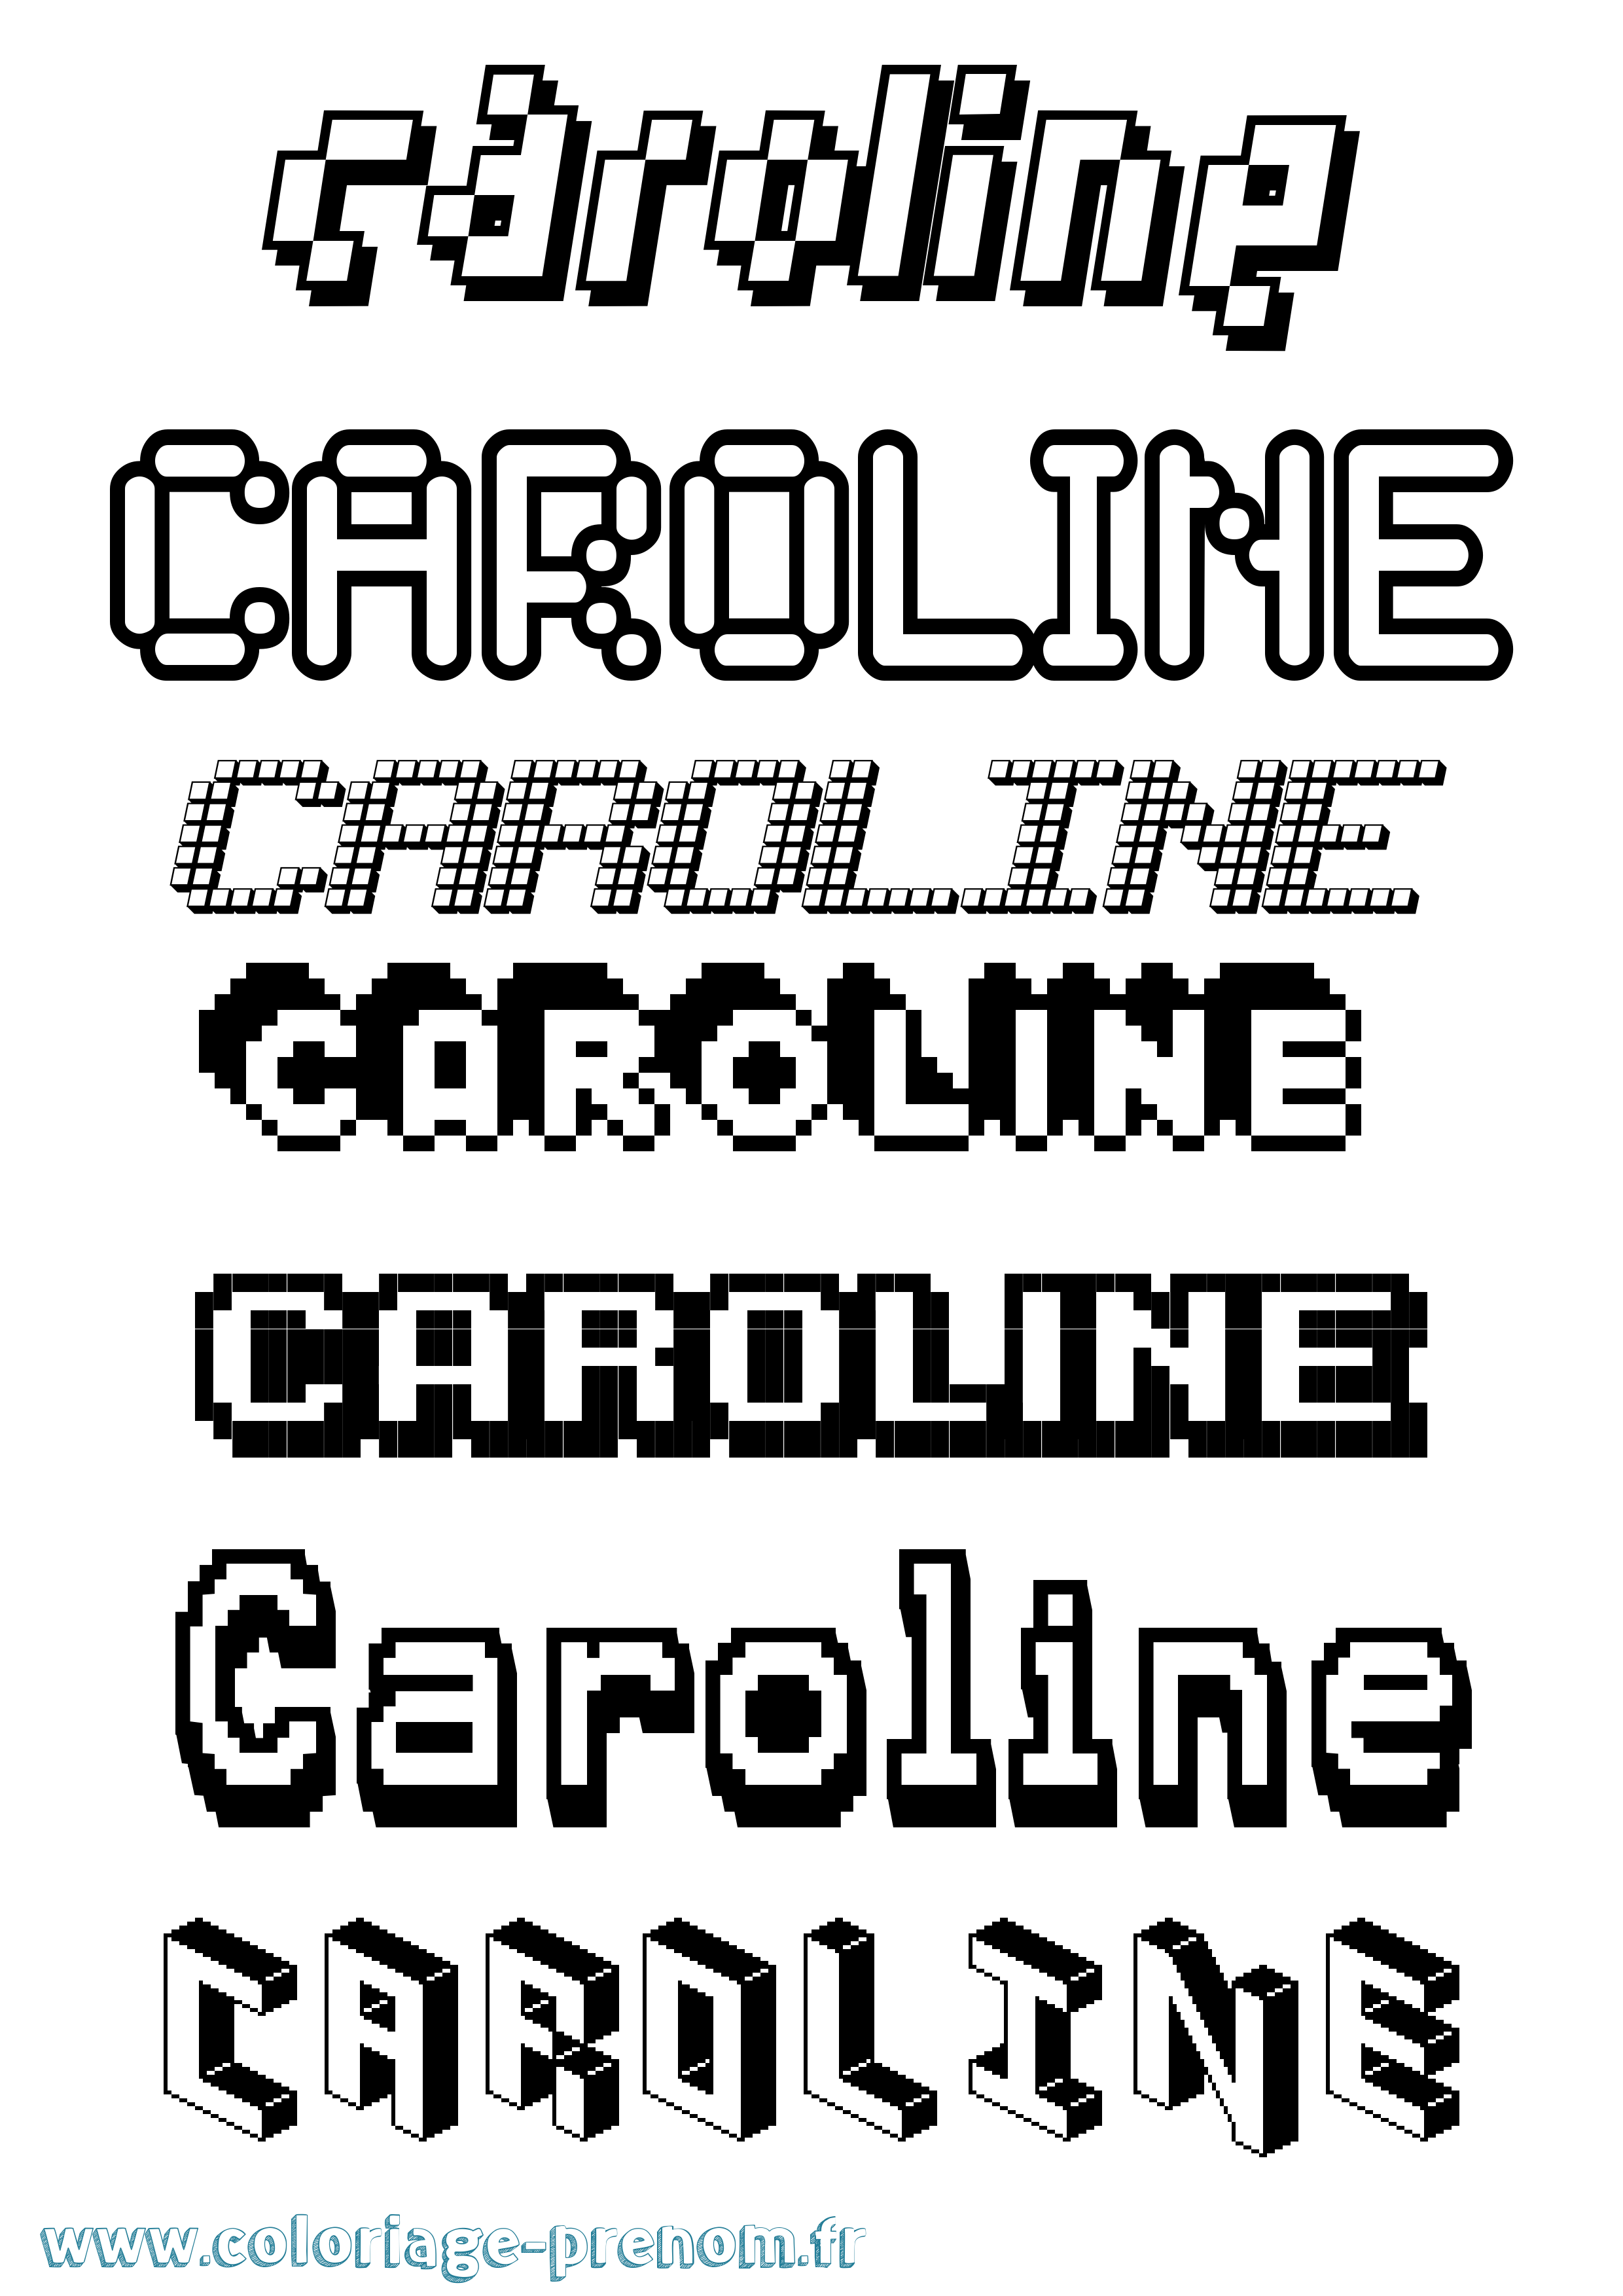 Coloriage prénom Caroline Pixel